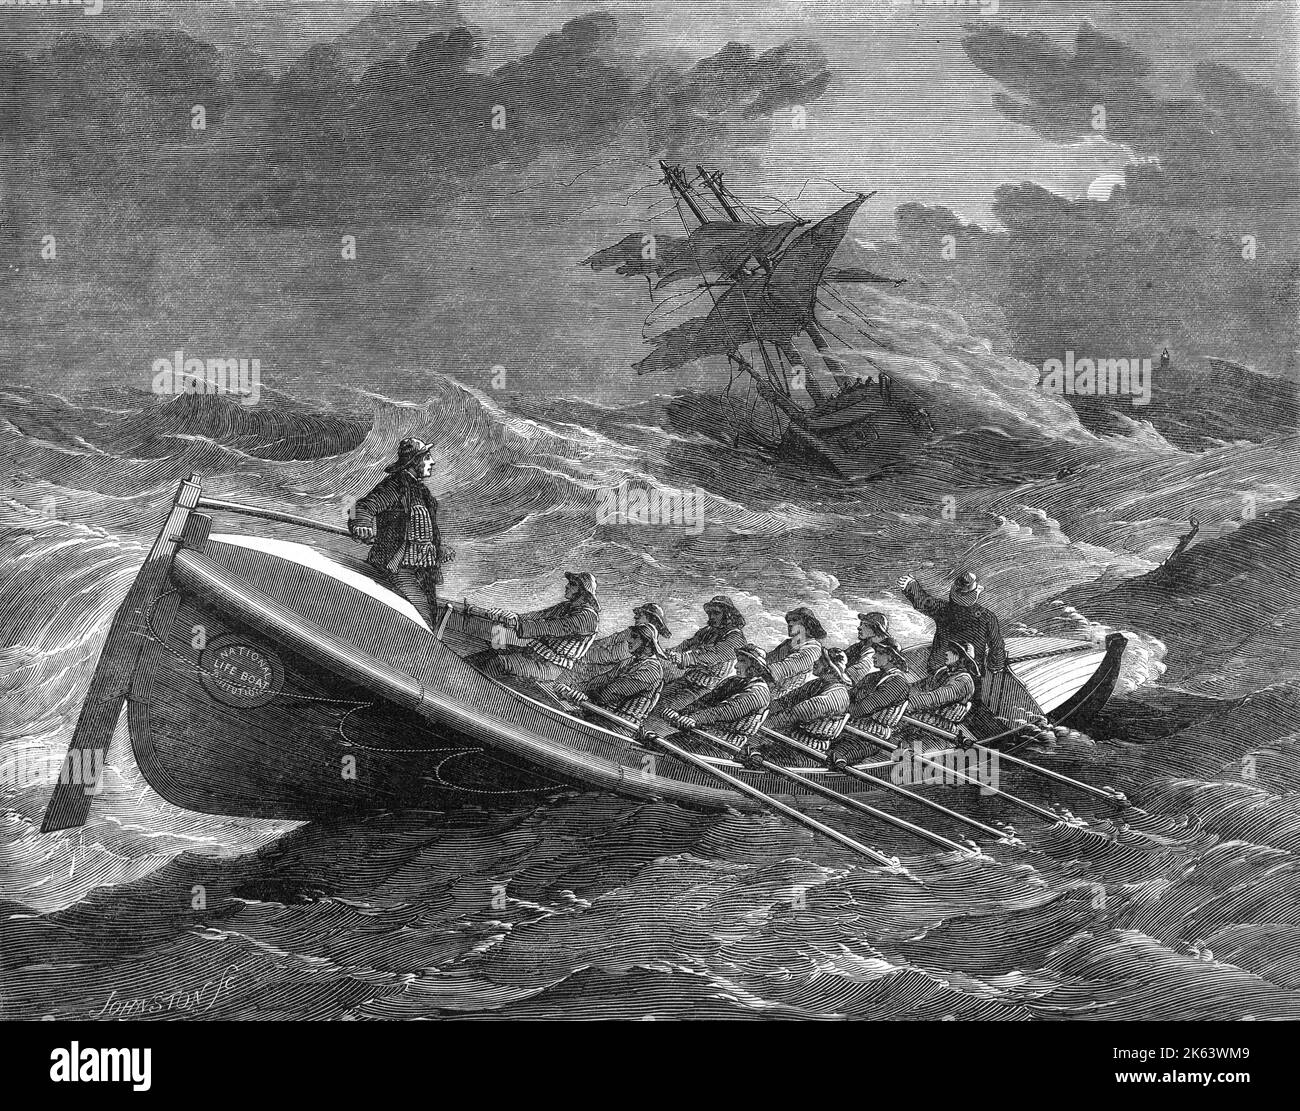 La nave Tenby LIFE procedendo al salvataggio dell'equipaggio della nave spagnola Nuevo Torcucato, 1857. La barca di vita porta il marchio della National Life Boat Institution. Data: 7th dicembre 1857 Foto Stock